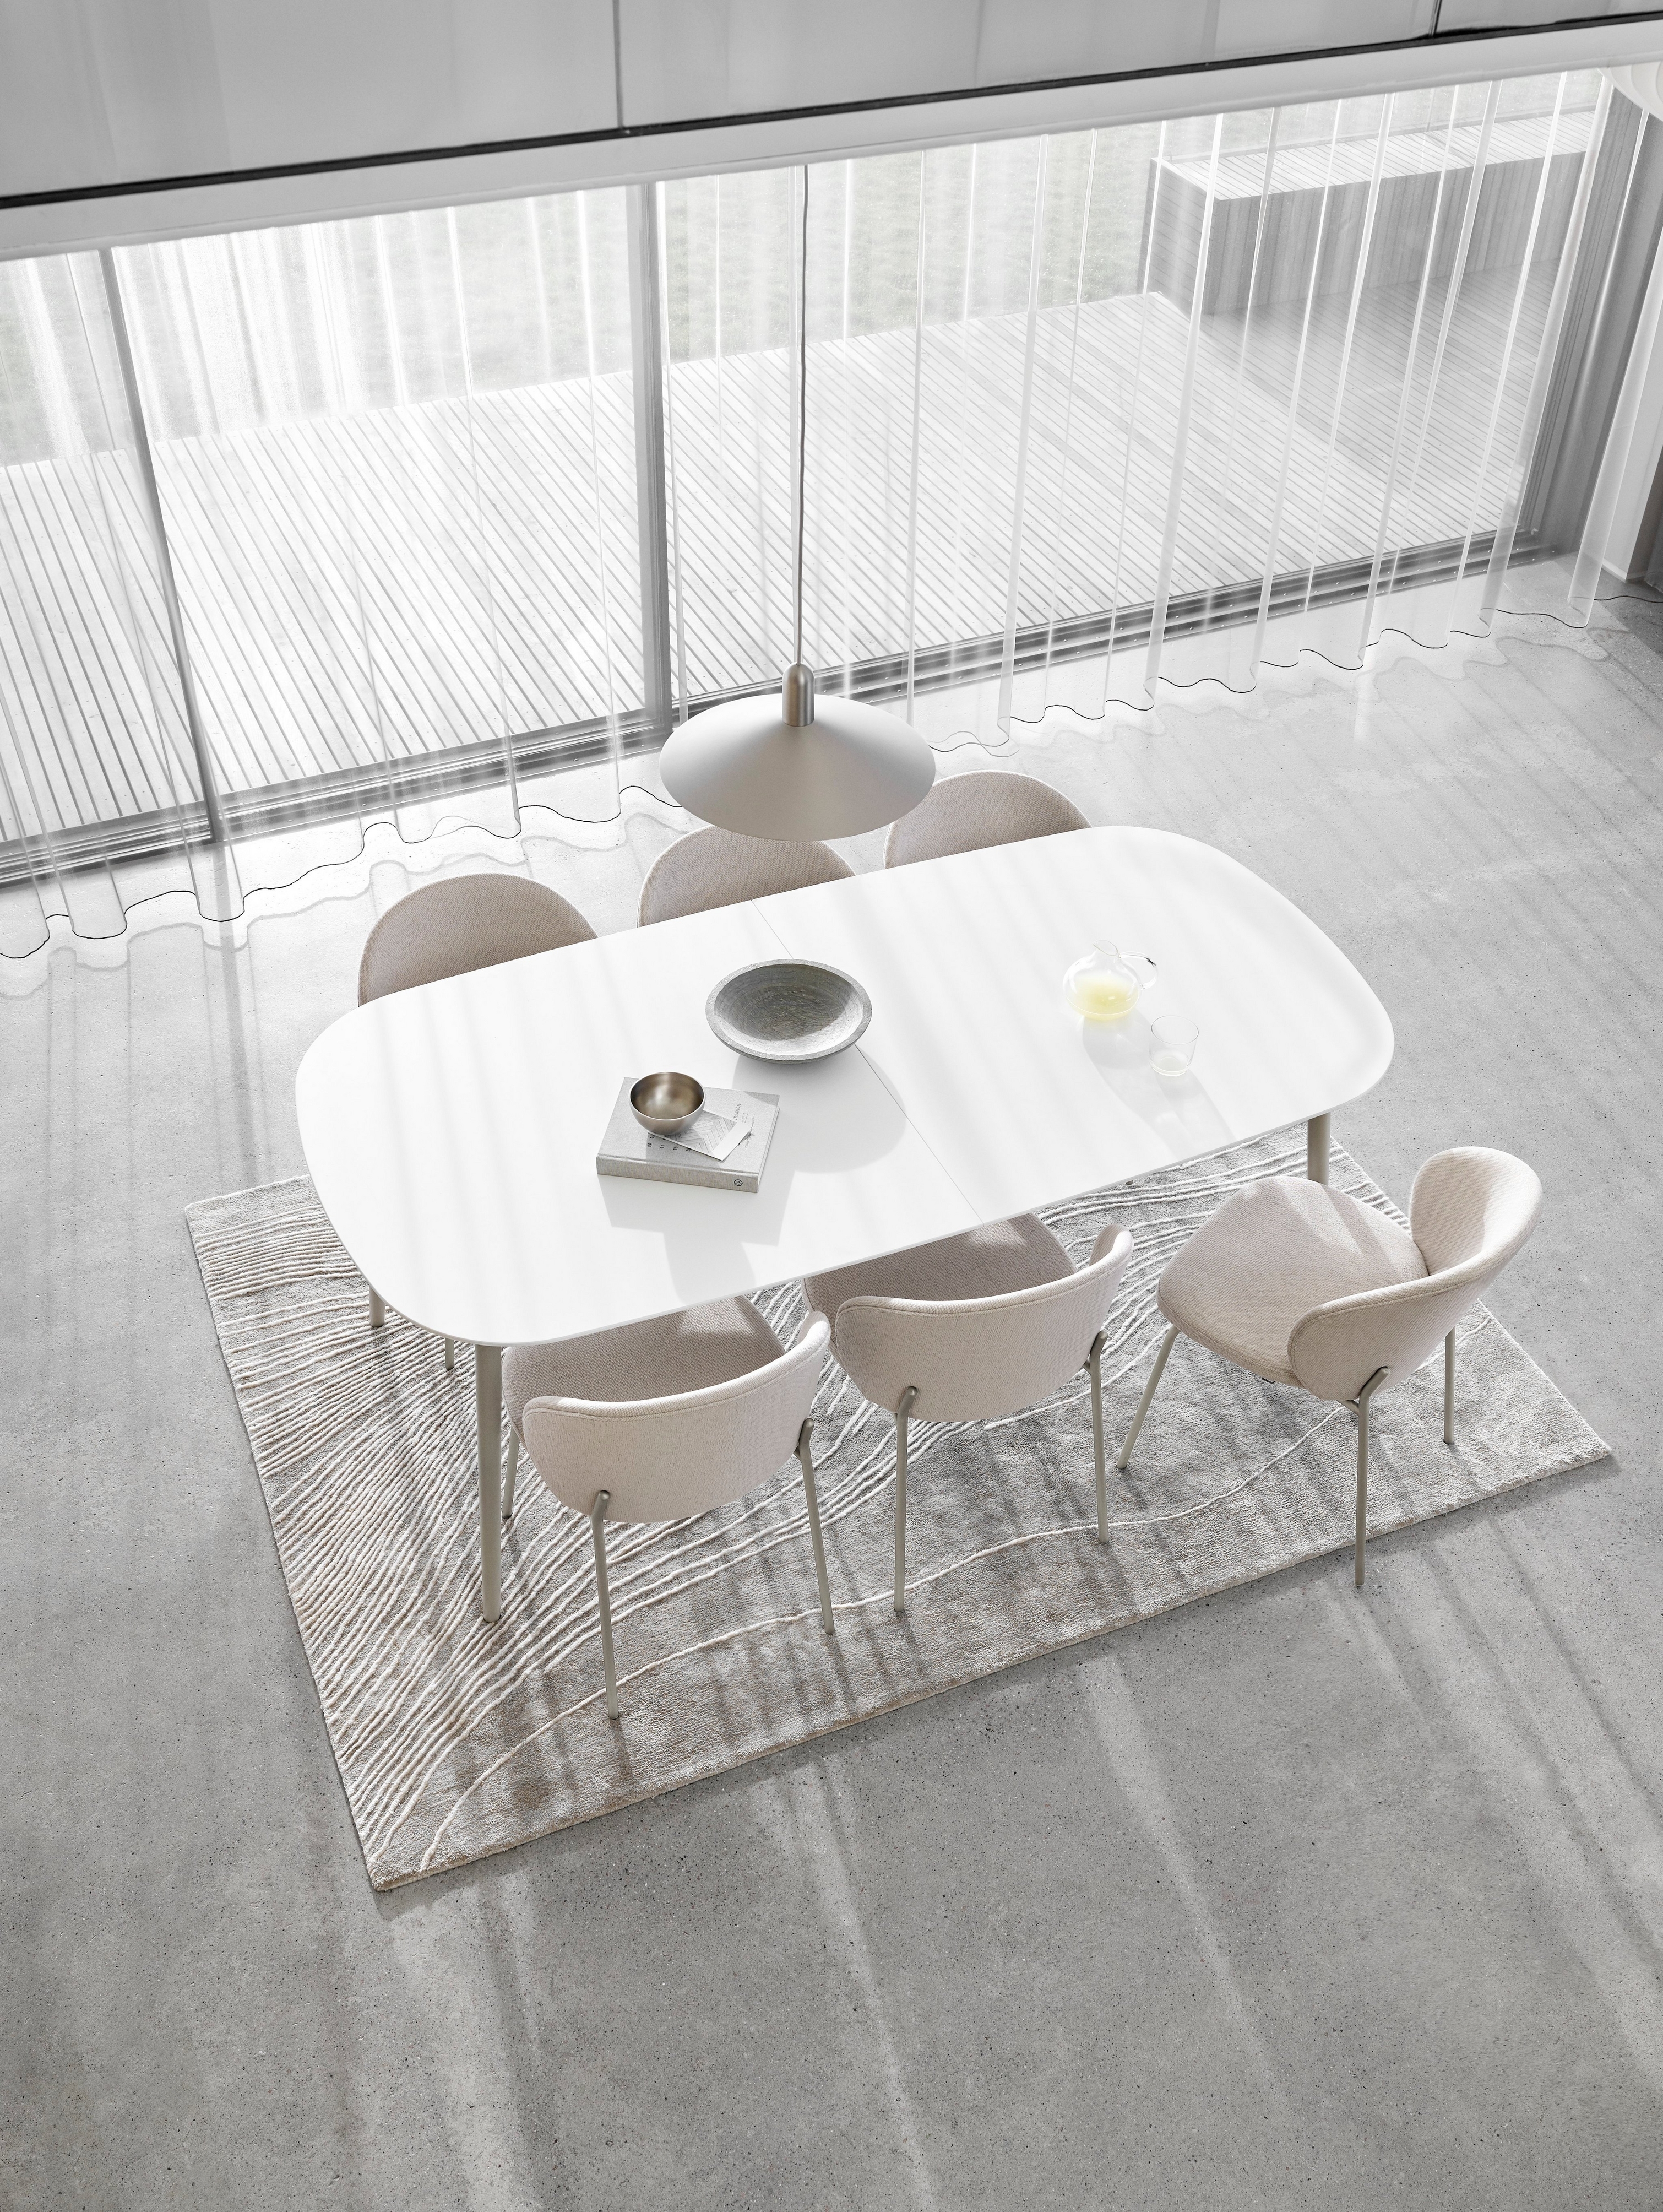 Минималистичная столовая с белым овальным столом, стульями, прозрачными шторами и текстурным ковром.